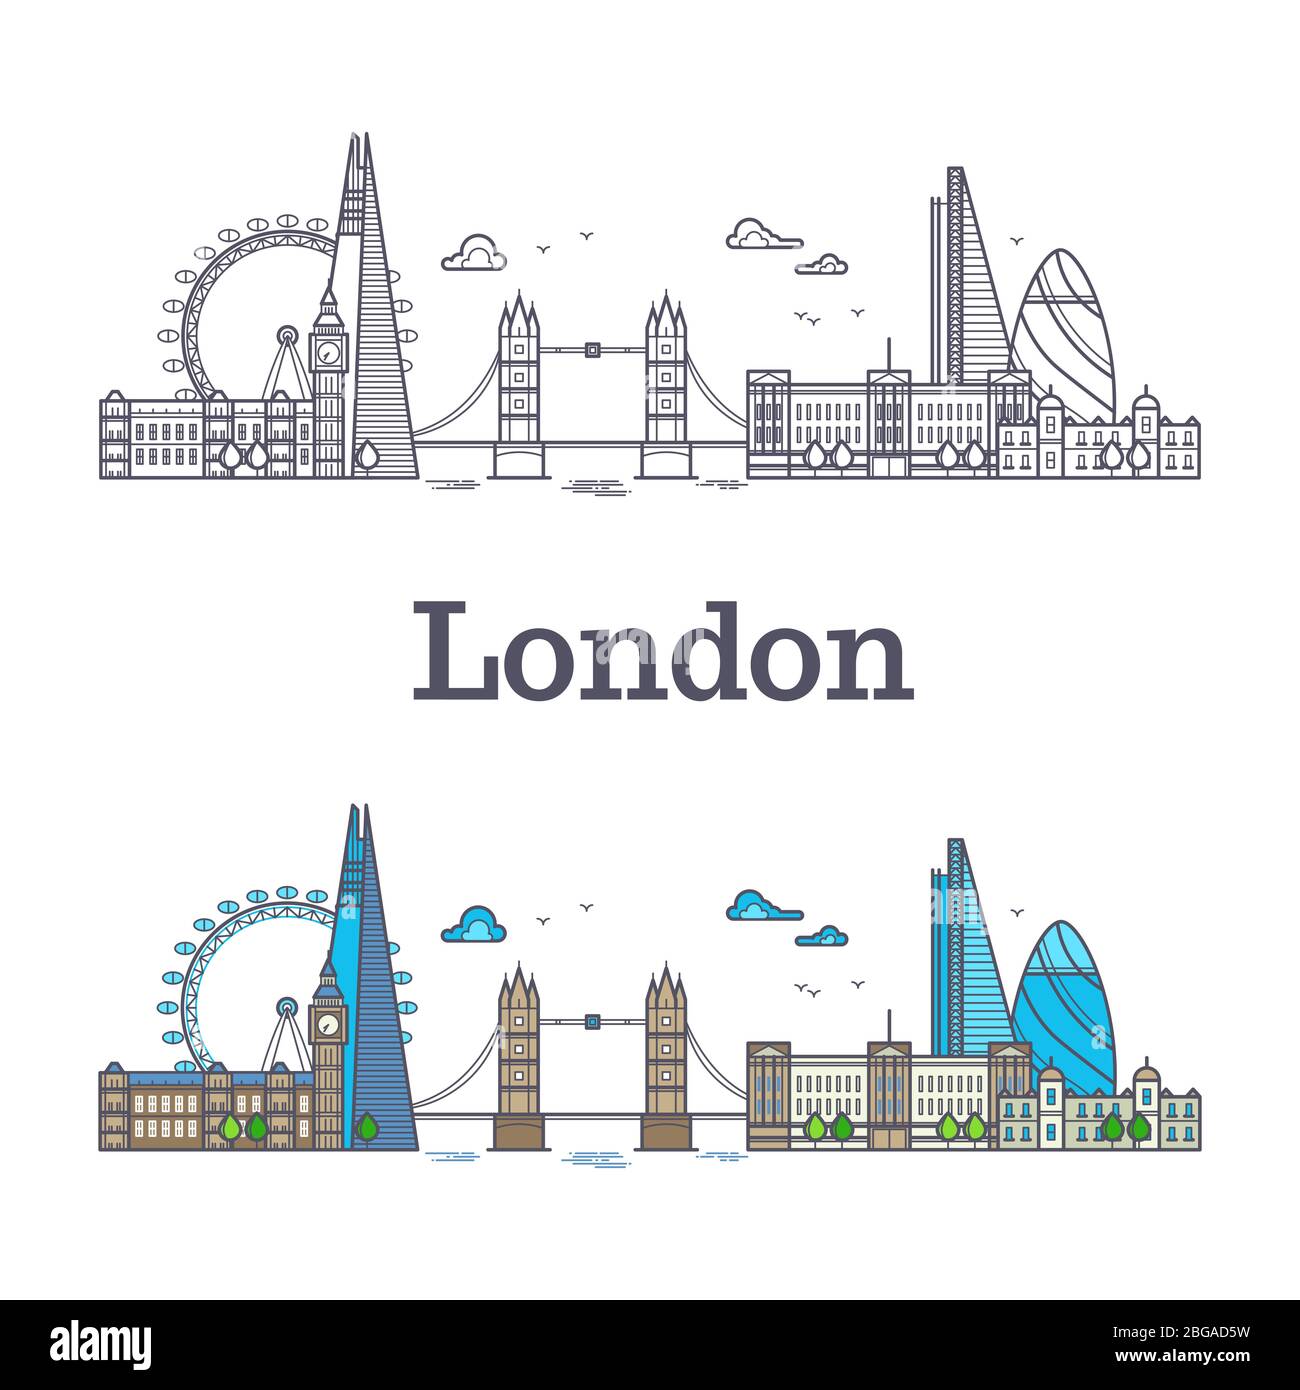 Londoner Skyline mit berühmten Gebäuden, Tourismus england Wahrzeichen umreißt und helle Vektor-Illustration Stock Vektor